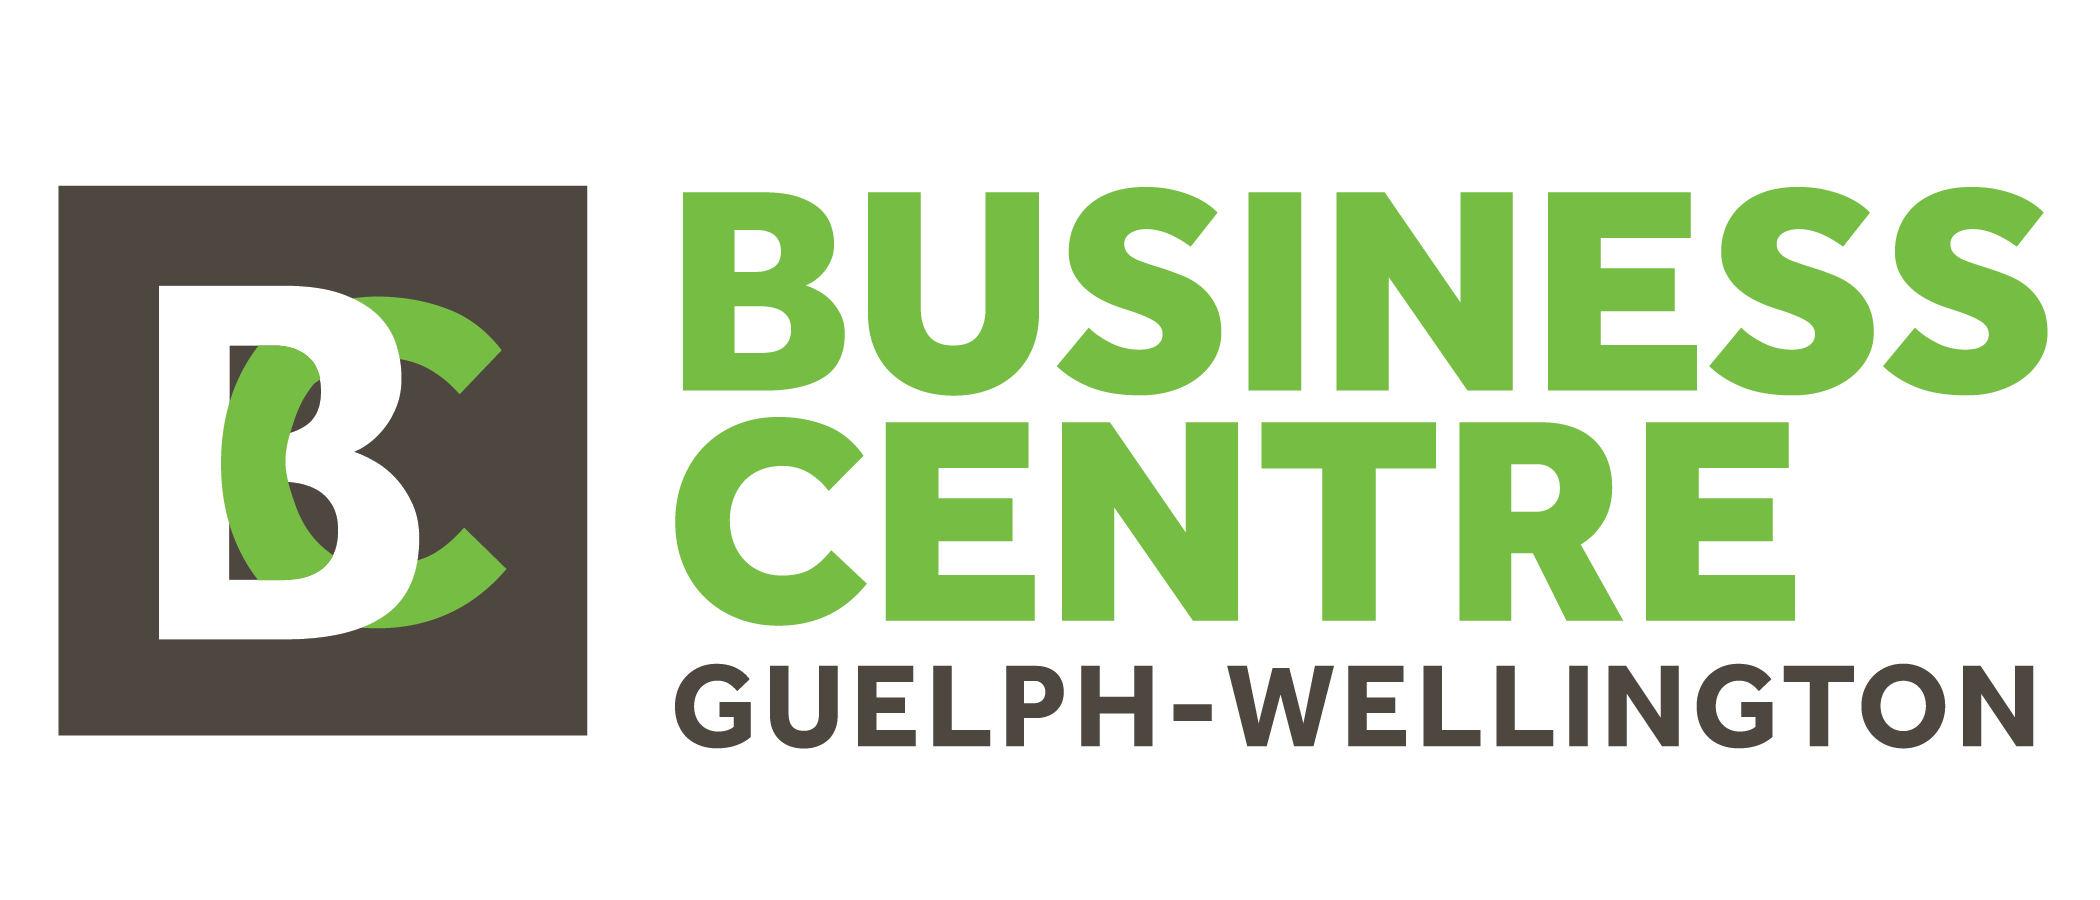 Visit the Business Centre Guelph Wellington